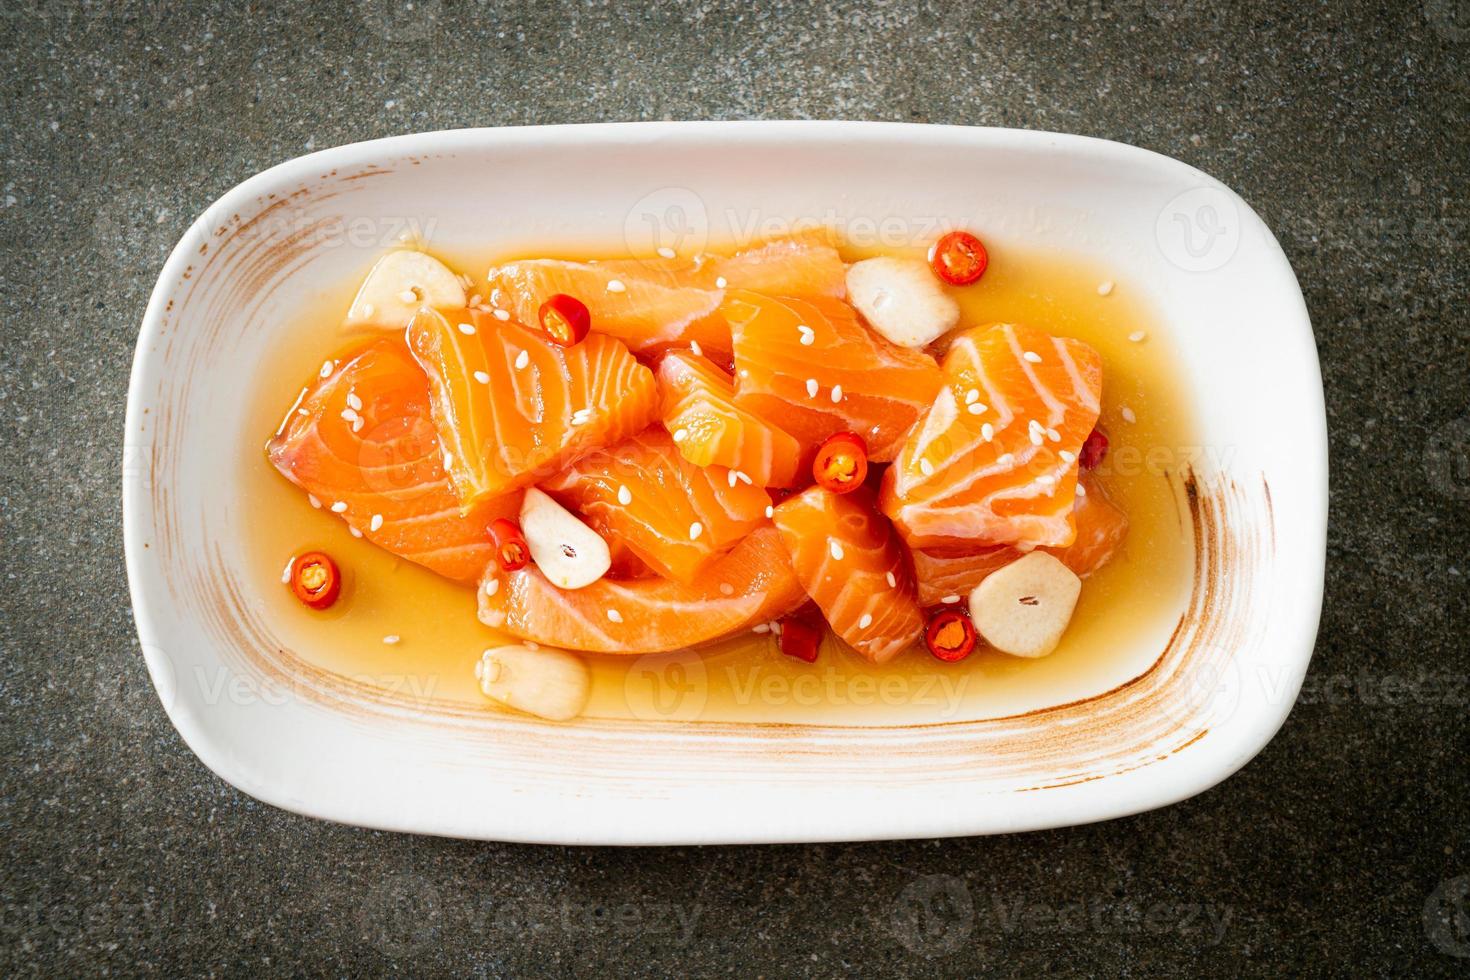 shoyu mariné cru au saumon frais ou sauce soja marinée au saumon - style cuisine asiatique photo